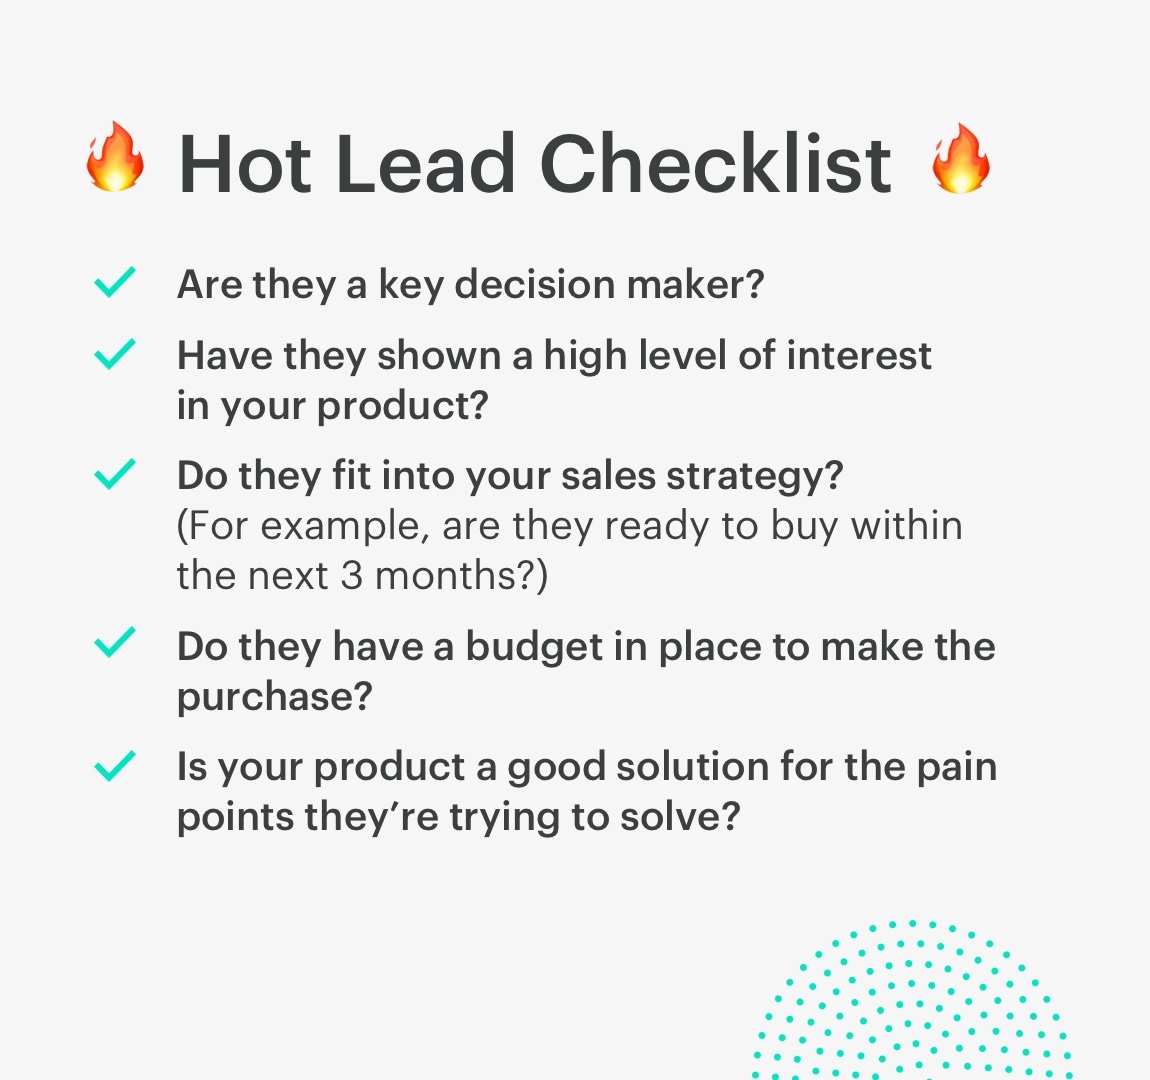 hot leads checklist: 5 key things